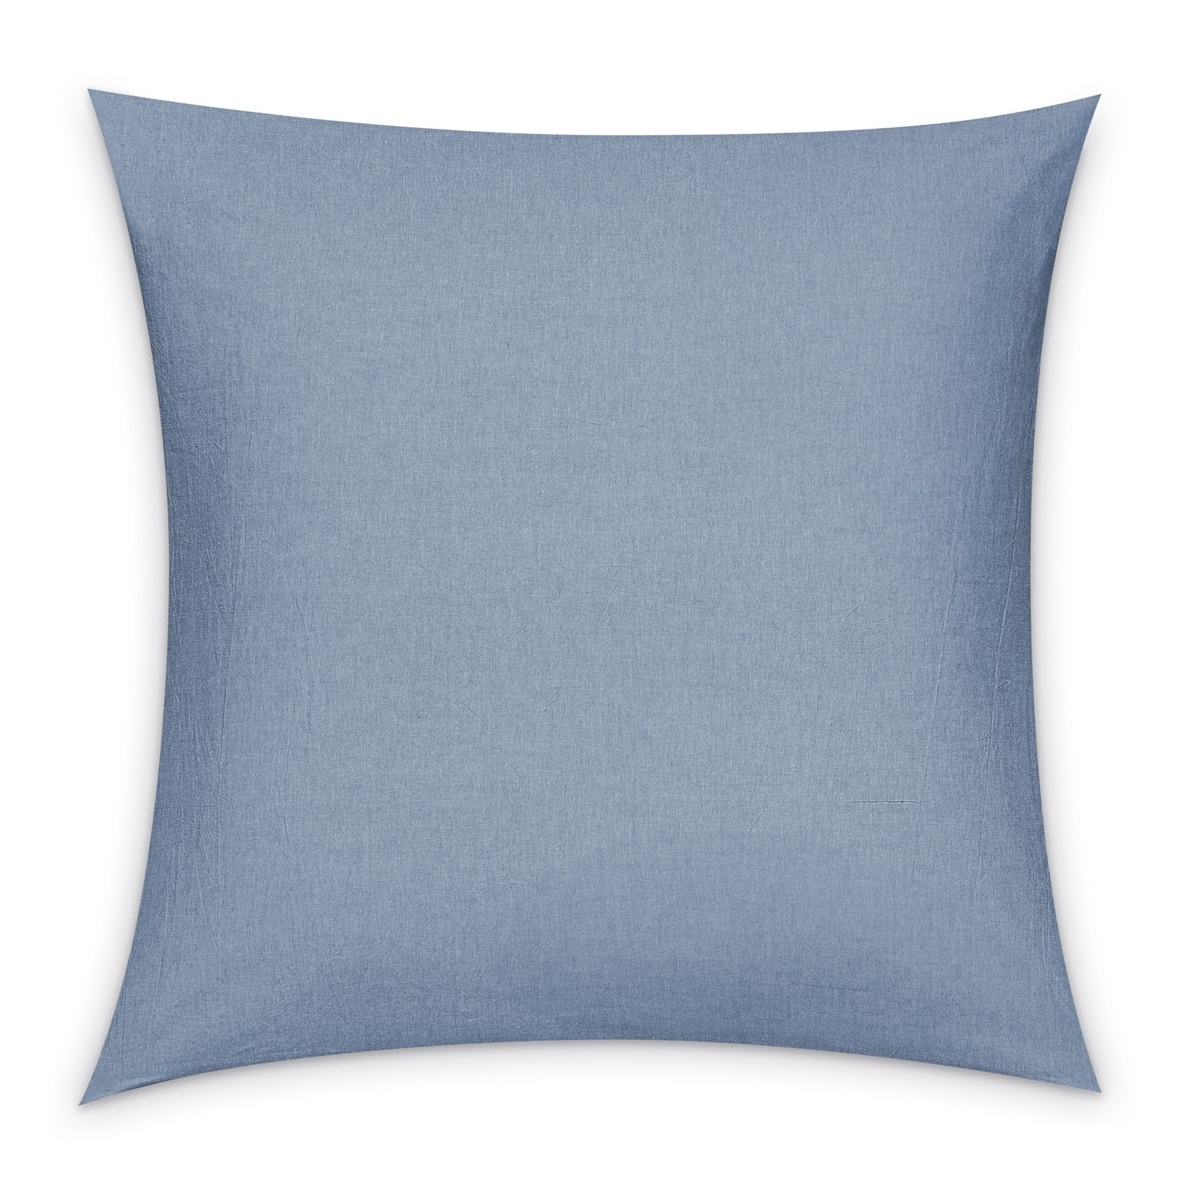 фото Комплект постельного белья prime prive смоген двуспальный кинг сайз голубой